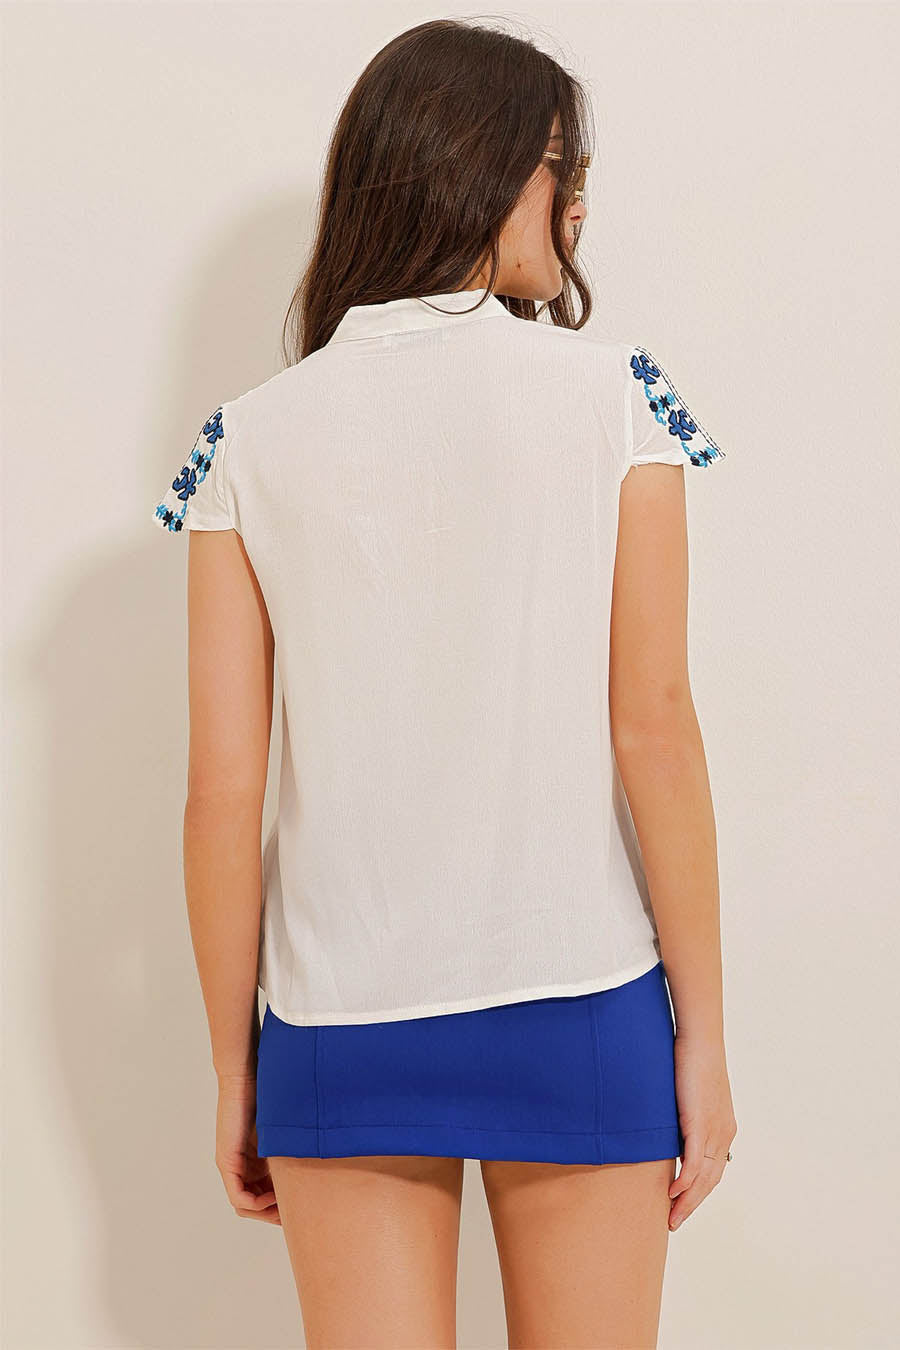 Γυναικεία μπλούζα Adelays, Λευκό/Μπλε 6